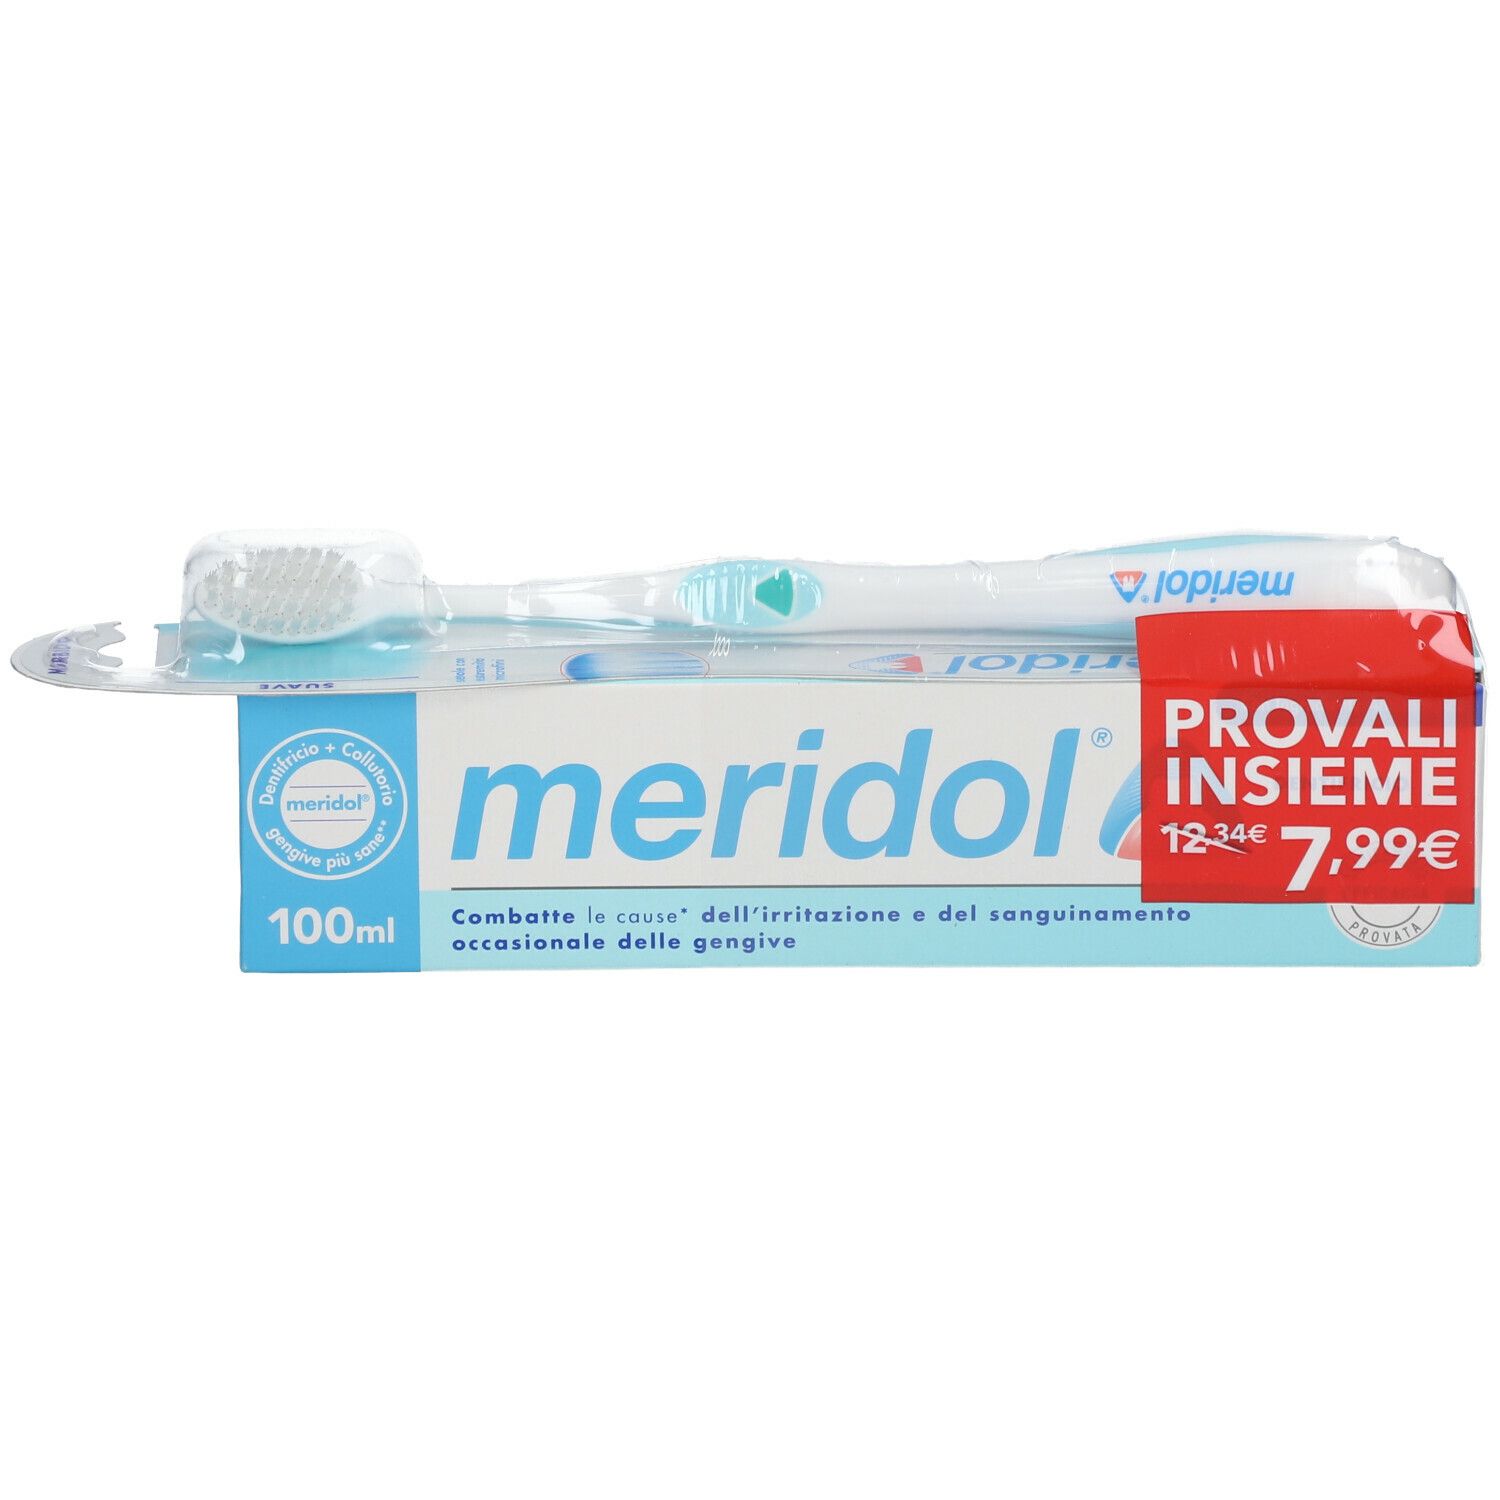 Meridol® Protezione Gengive Spazzolino e Dentifricio